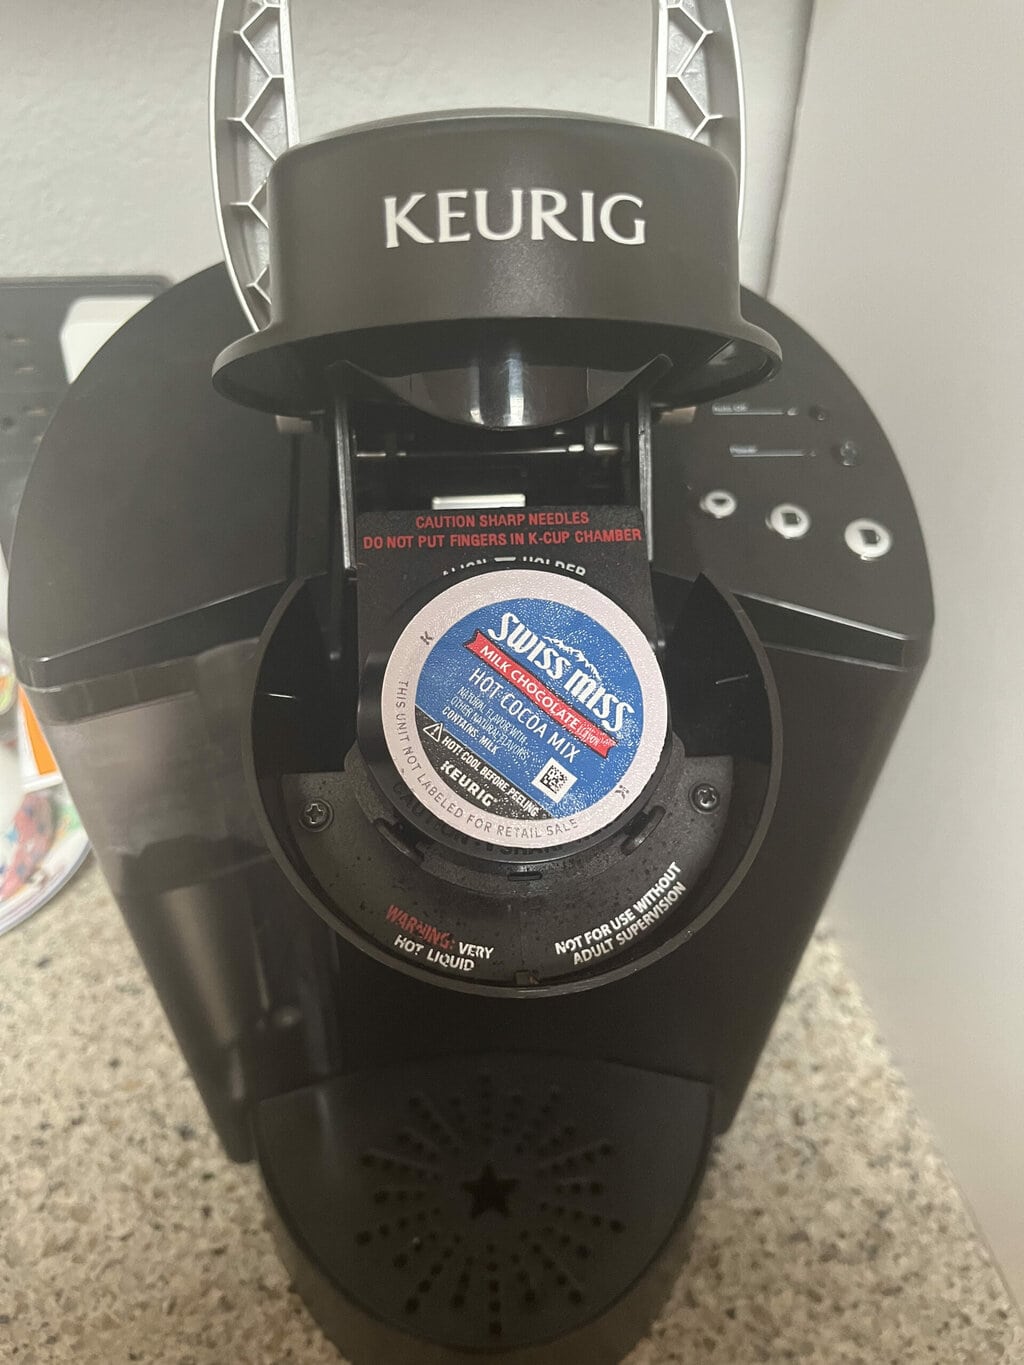 ¿Qué monodosis de café son compatibles con las máquinas Keurig?